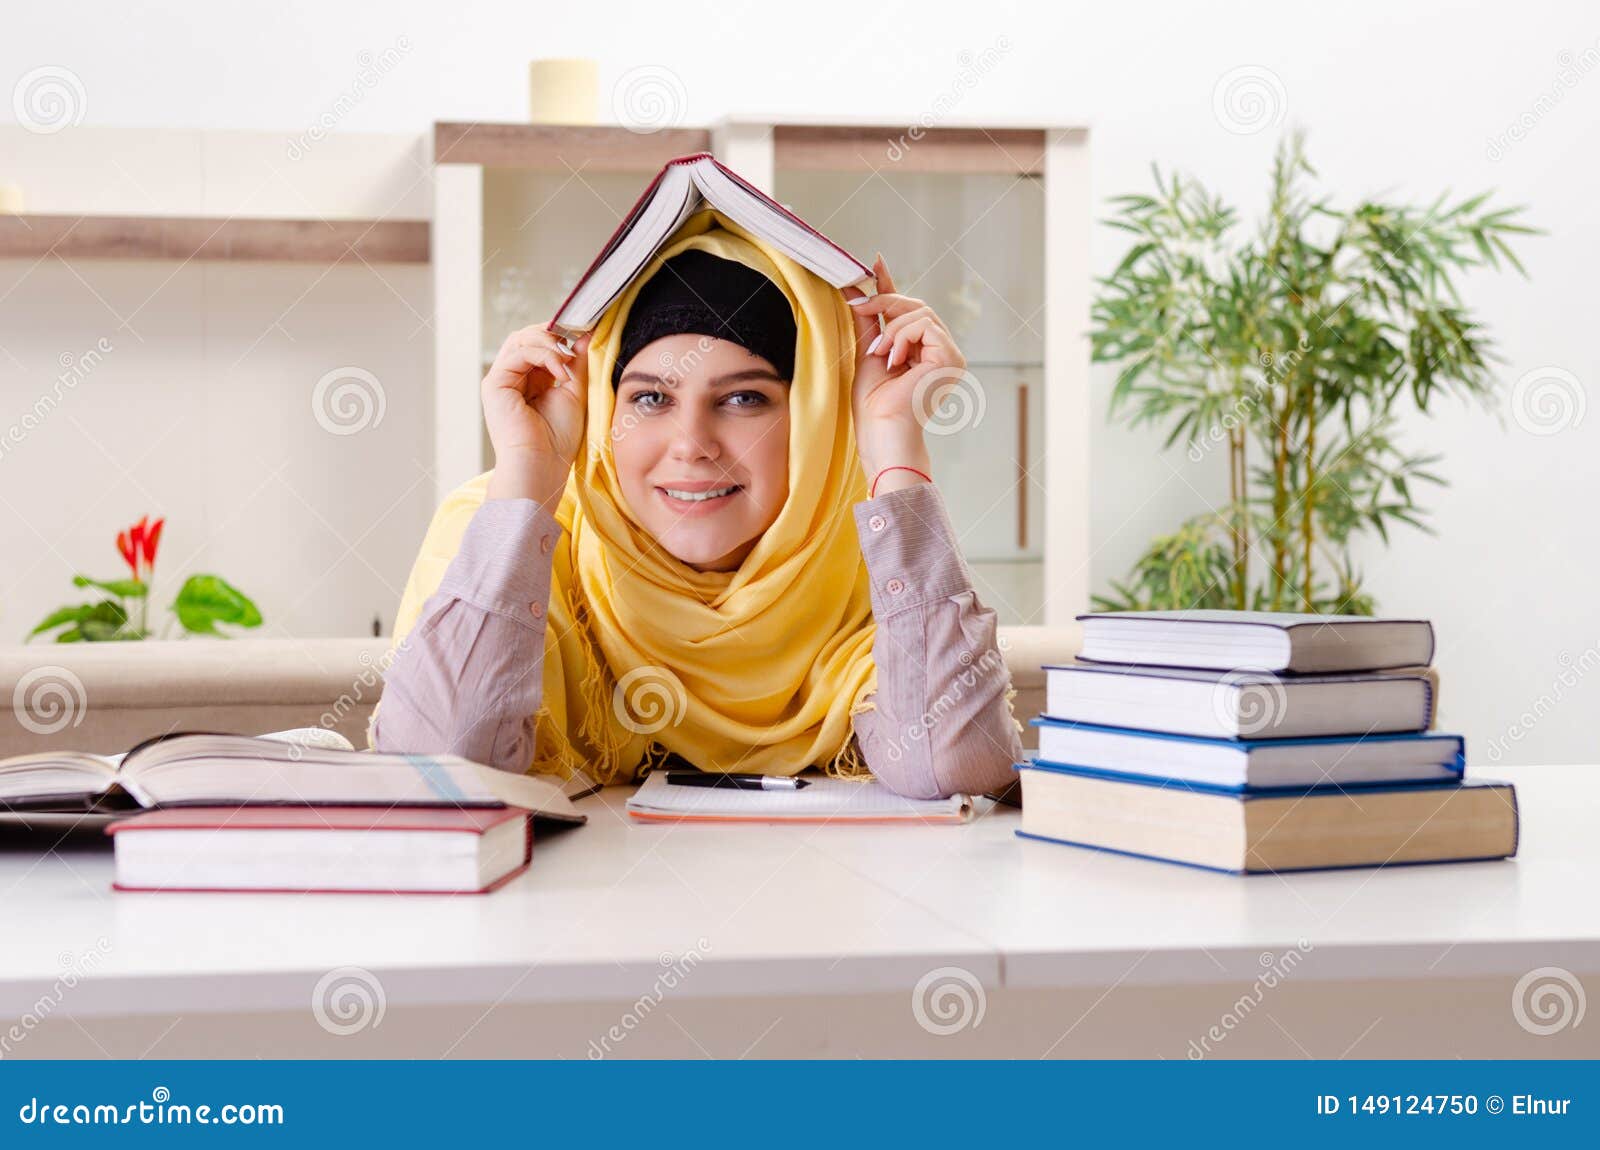 El Estudiante En El Hijab Que Se Prepara Para Los Ex Menes Foto De